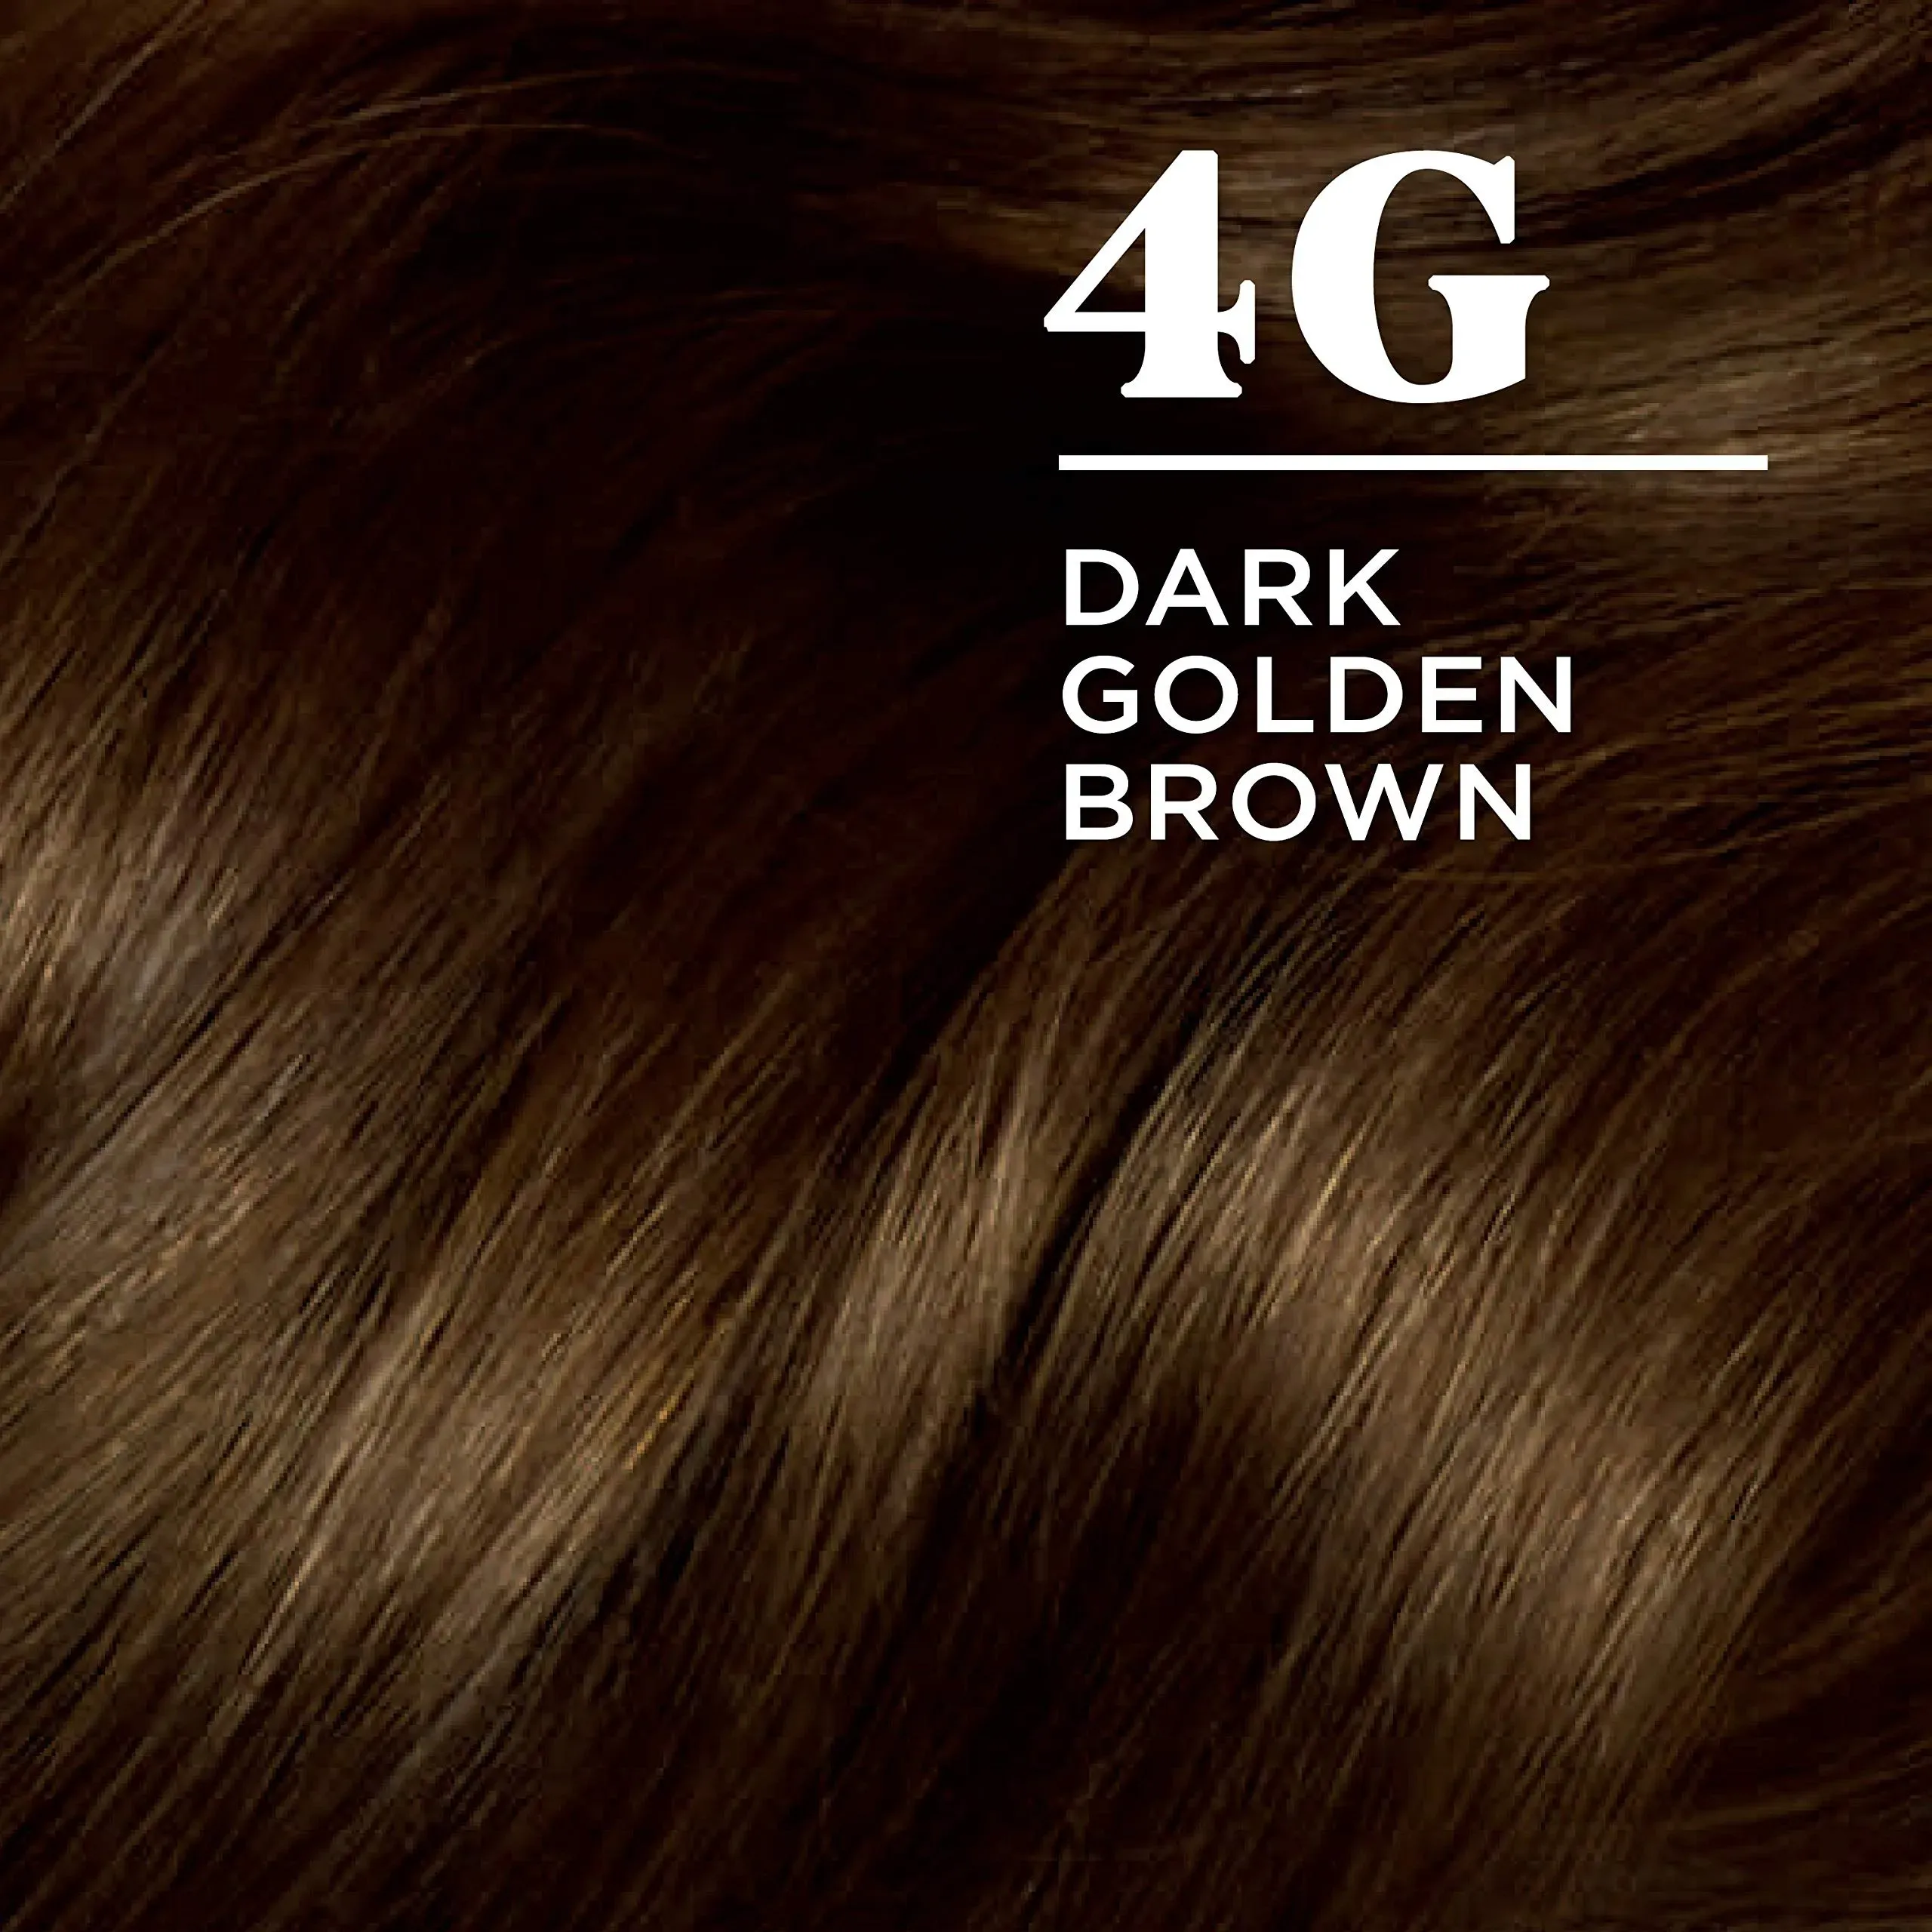 Clairol Nice'n Easy Permanent Hair Dye, 4G Dark Golden Brown Hair Color, Pack of 1